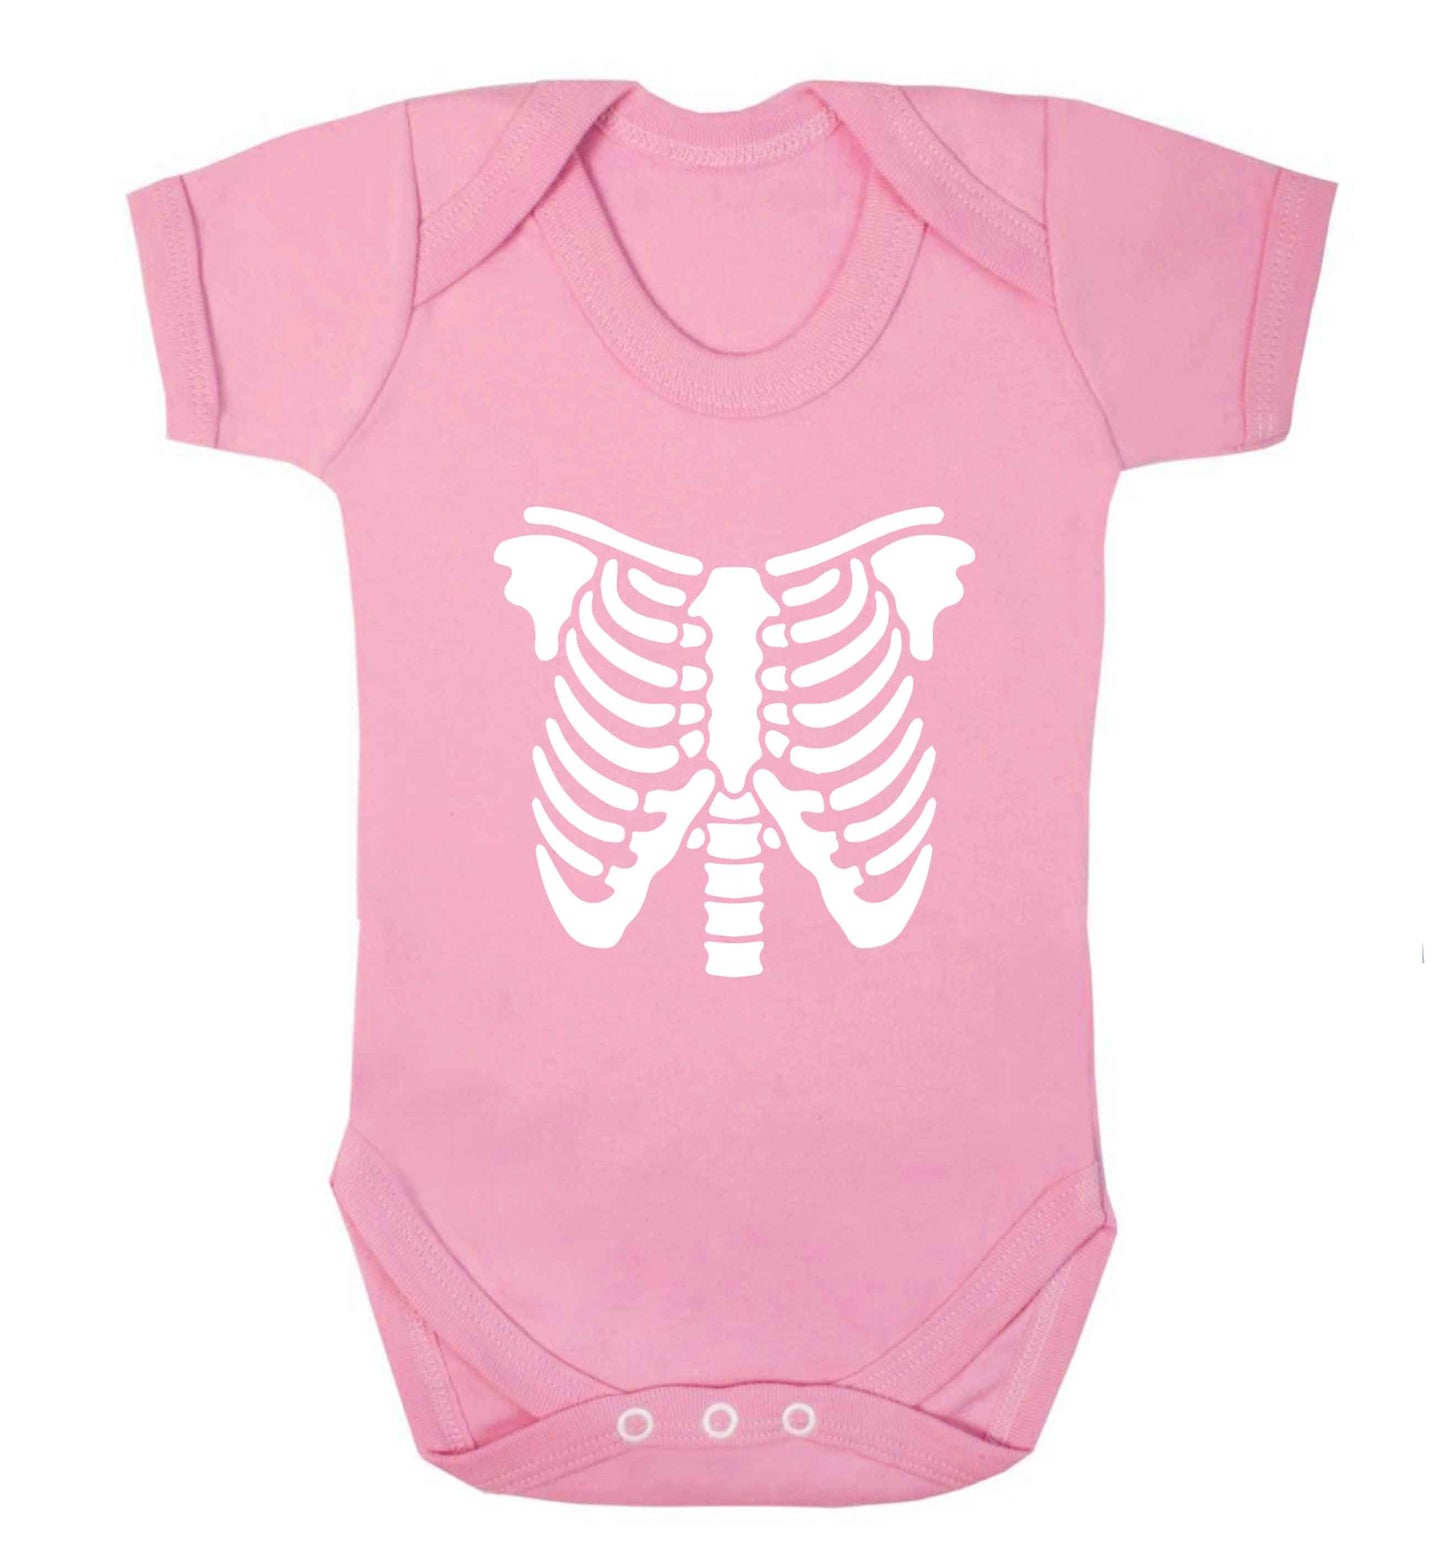 Skeleton ribcage baby vest pale pink 18-24 months